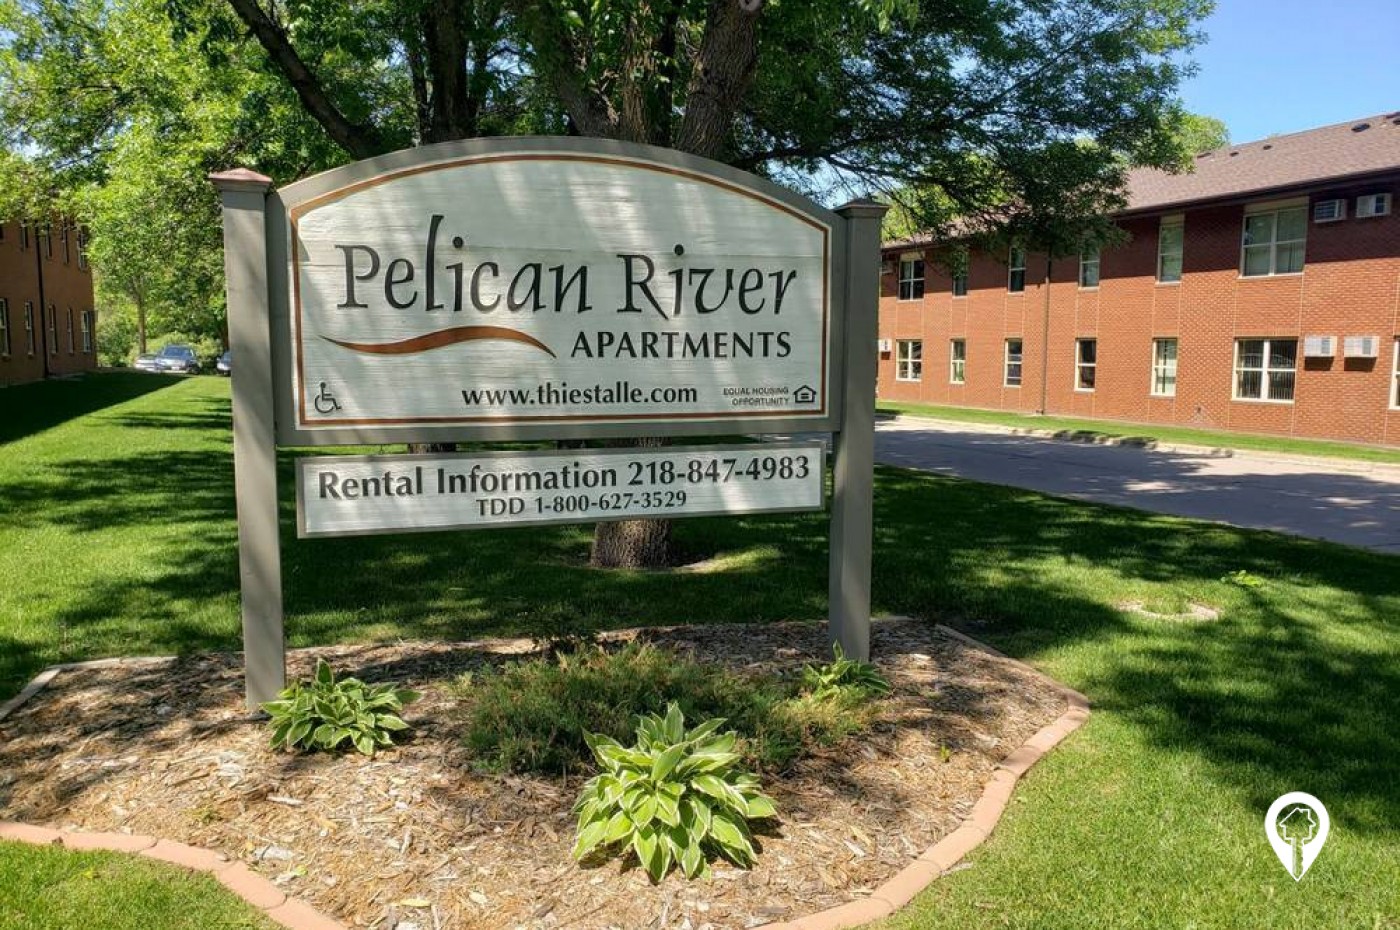 Pelican River Apartments